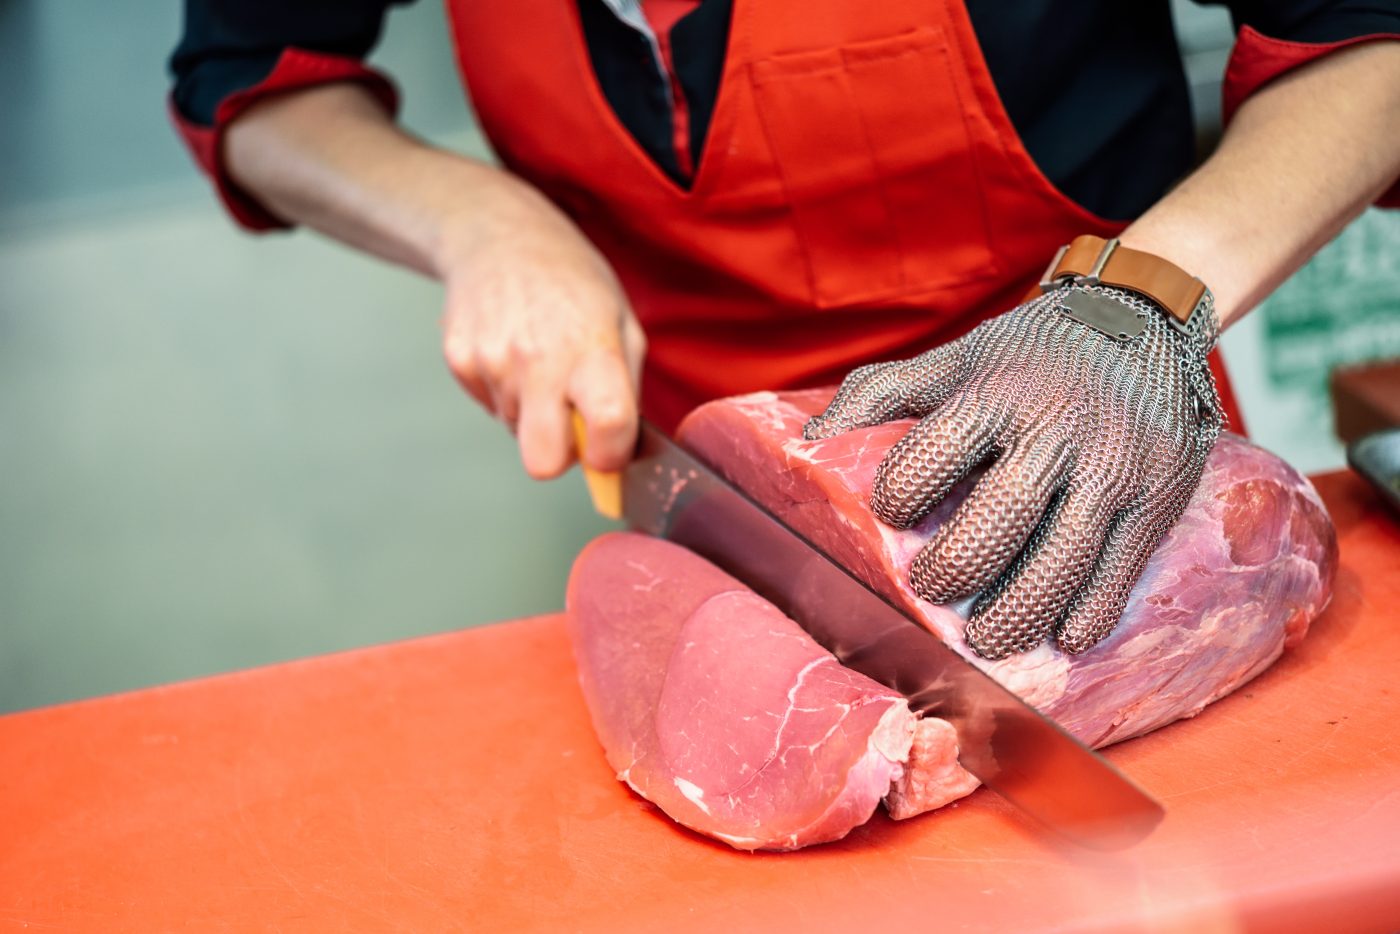 Empresas vão doar 2 milhões de quilos de carne para vítimas das enchentes no RS